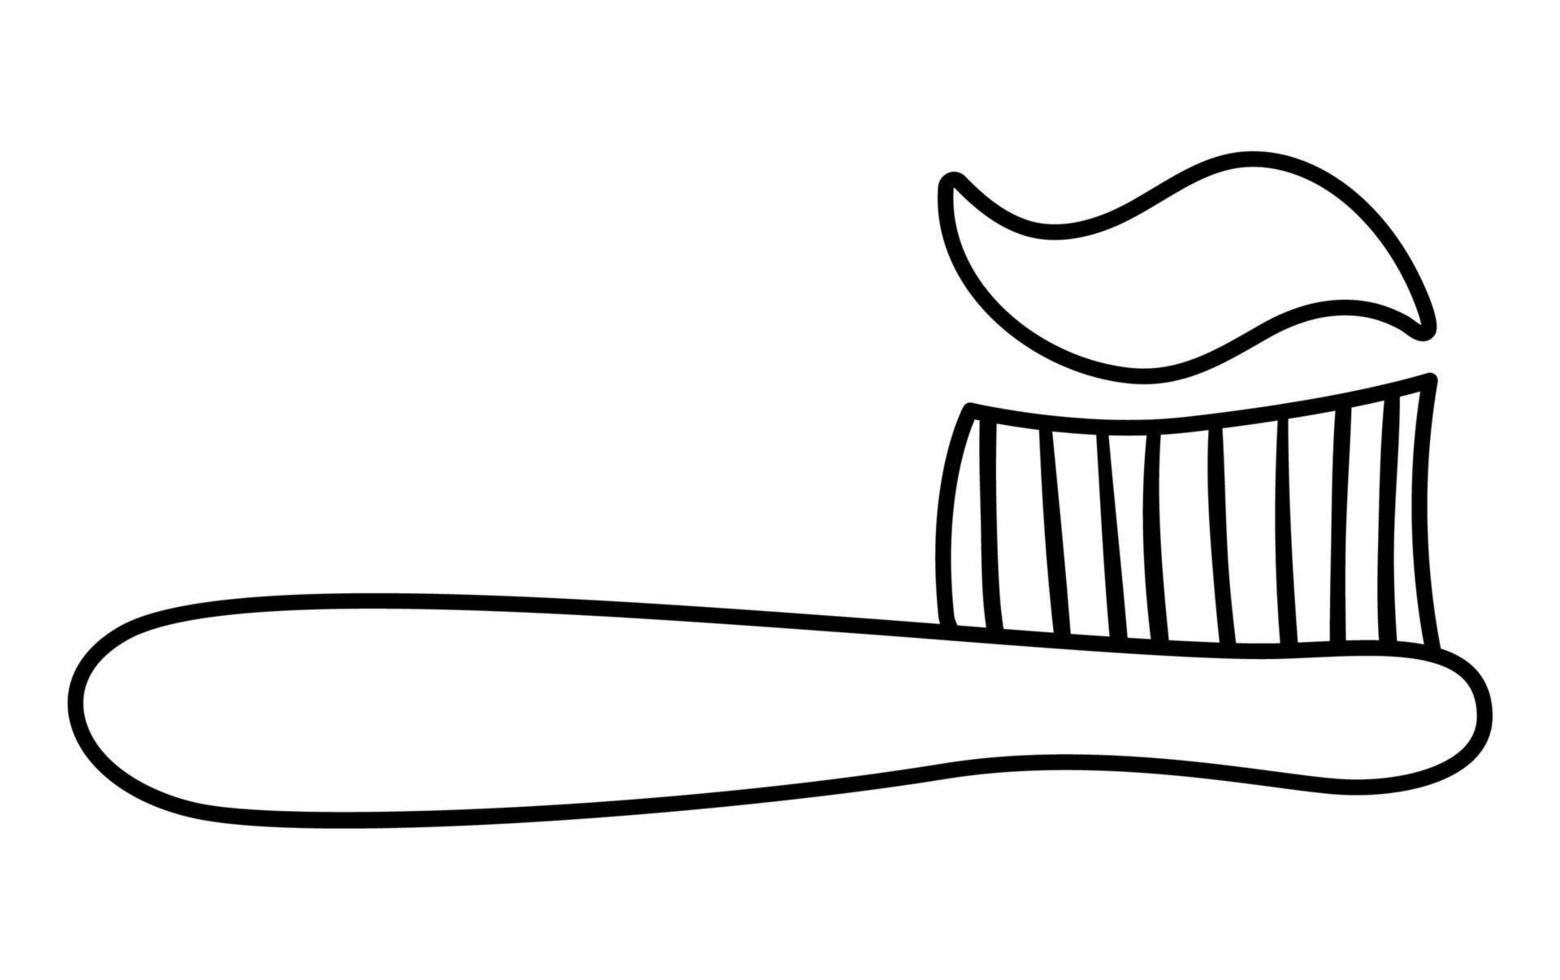 zwart-wit tandenborstel pictogram geïsoleerd op een witte achtergrond. vector overzicht tand zorg tool. tandheelkunde apparatuur illustratie. lijn tandenborstel met tandpasta of kleurplaat